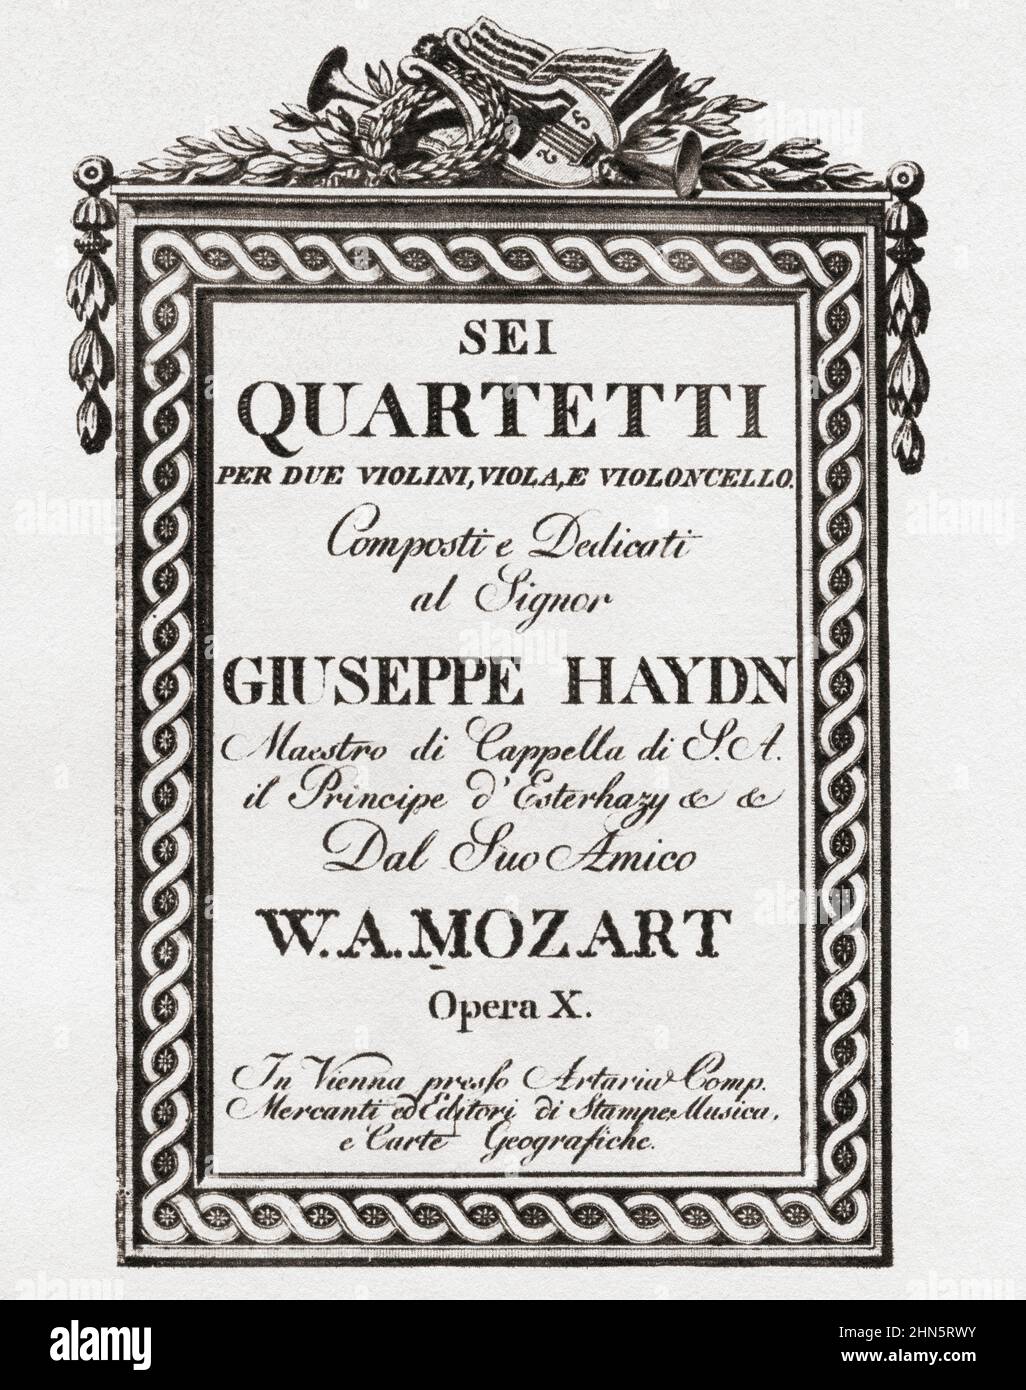 Haydn-Quartette (Op10). Titelbild der Partitur für Mozarts Haydn-Quartette (6 Haydn-Quartette gewidmet). Wolfgang Amadeus Mozart, 1756-1791. Österreichischer Komponist. Aus dem Goldenen Zeitalter von Wien, erschienen 1948. Stockfoto